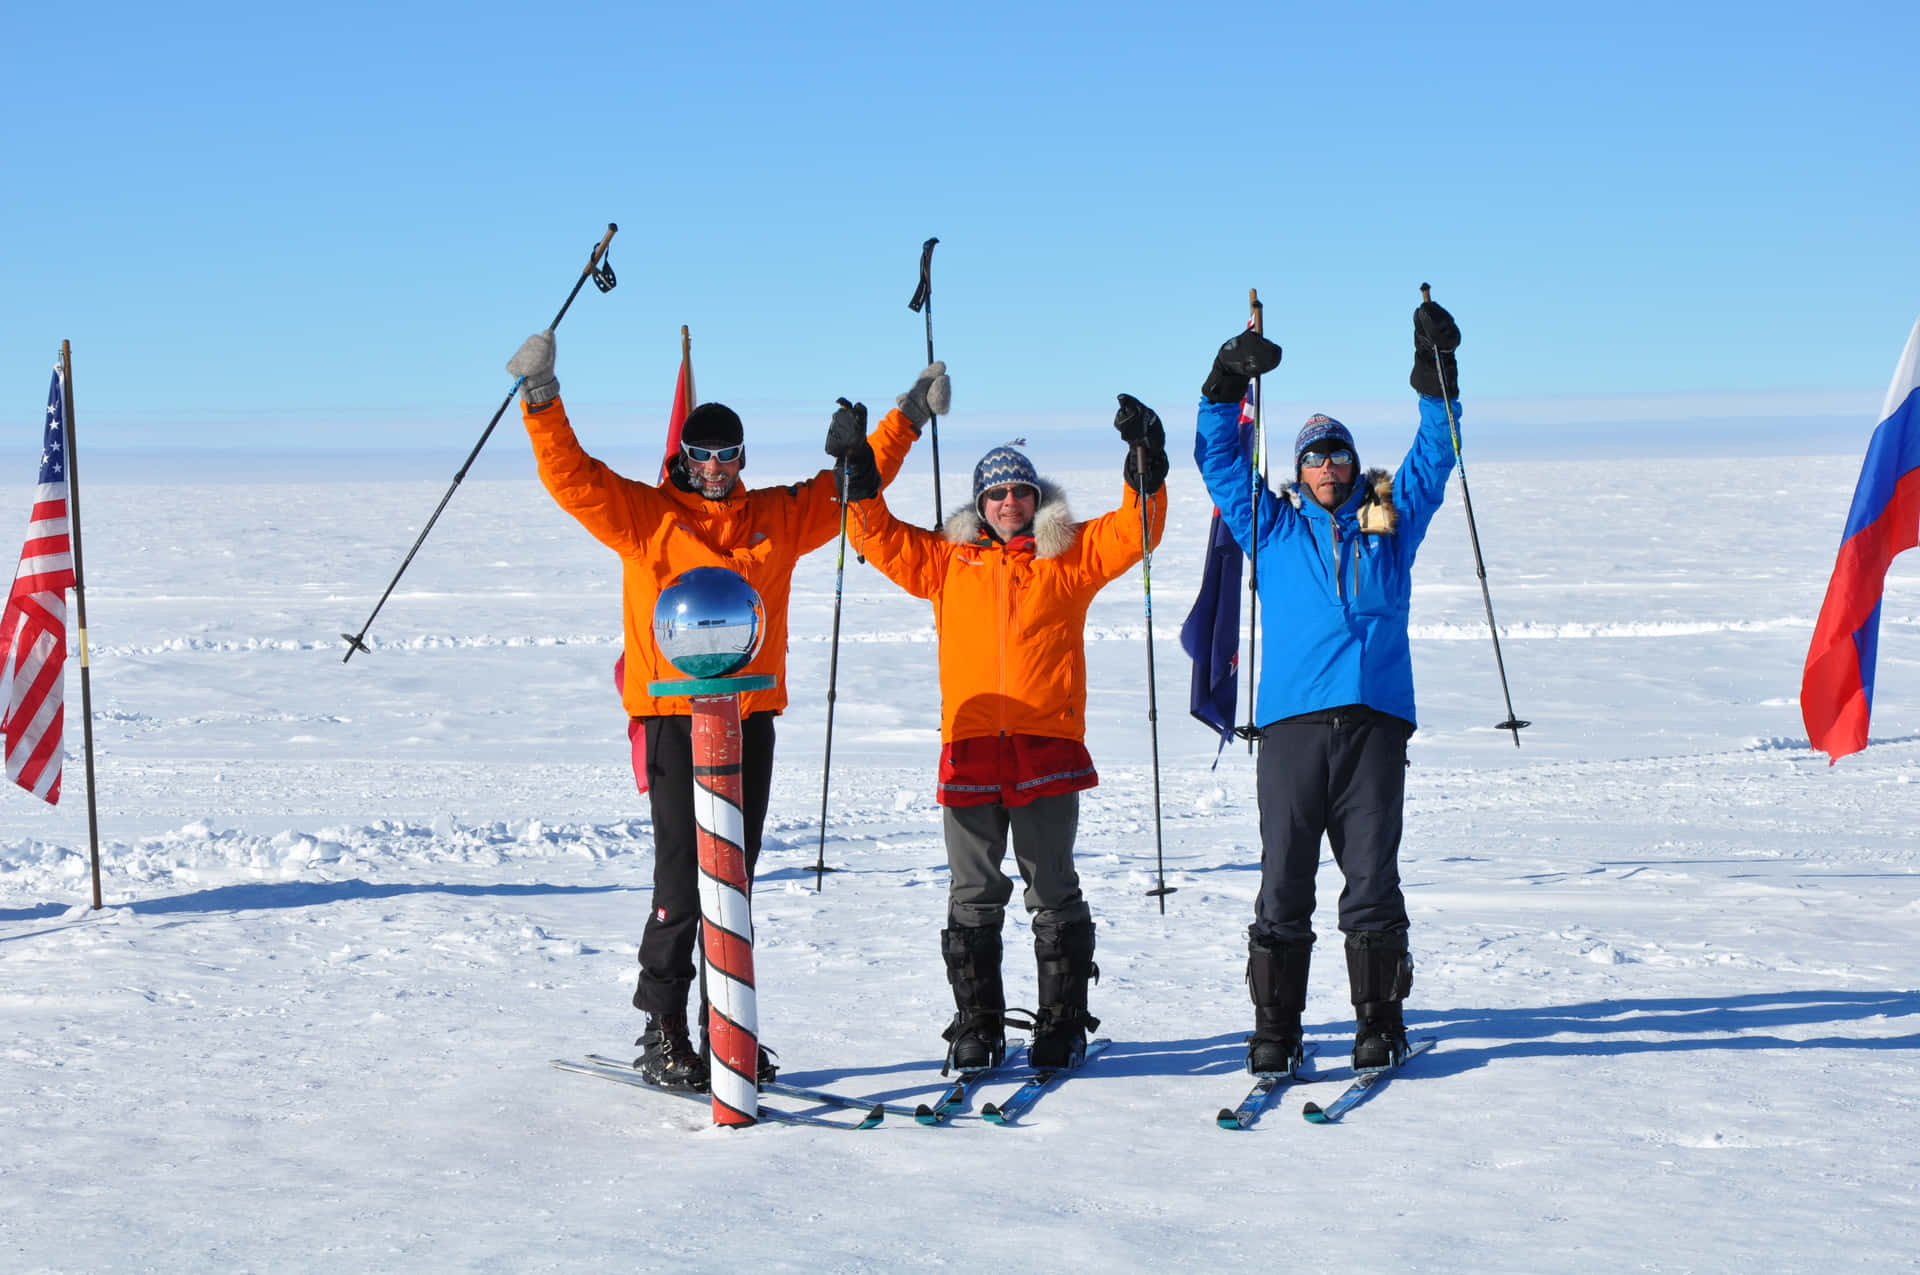 Esplorandol'artico Statico Del Polo Sud